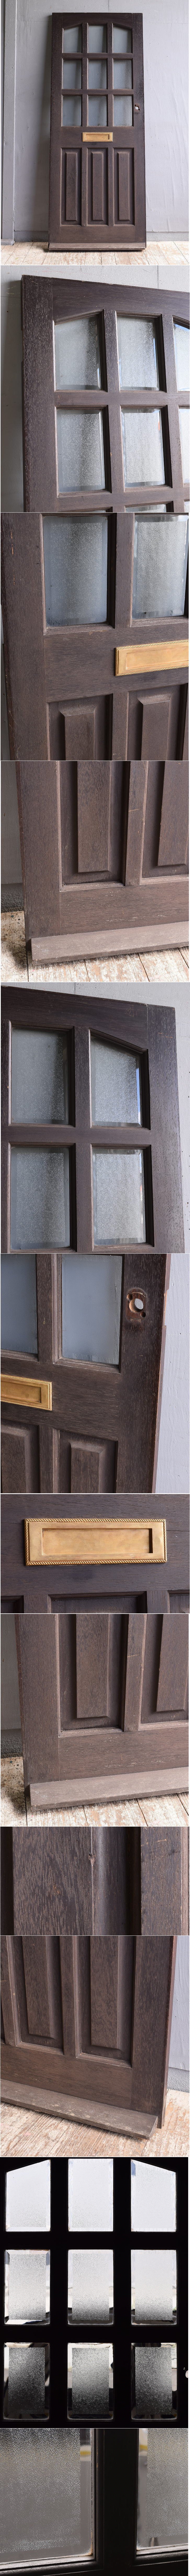 イギリス アンティーク 木製ドア 扉 建具 11826